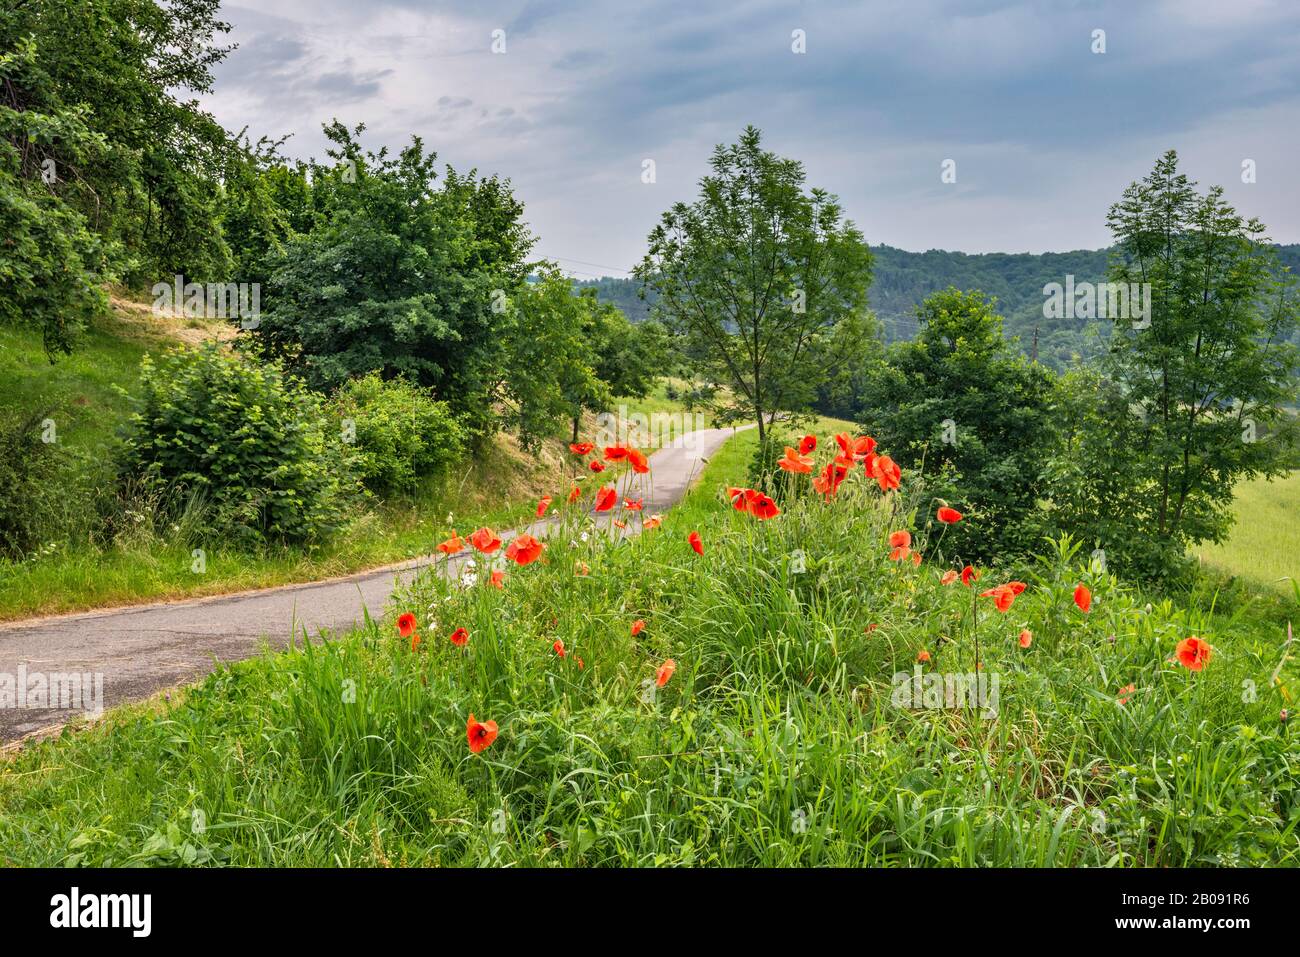 Les coquelicots en fleurs, route locale, près du village de Melsztyn, Roznow Foothills, Malapolska, Pologne Banque D'Images